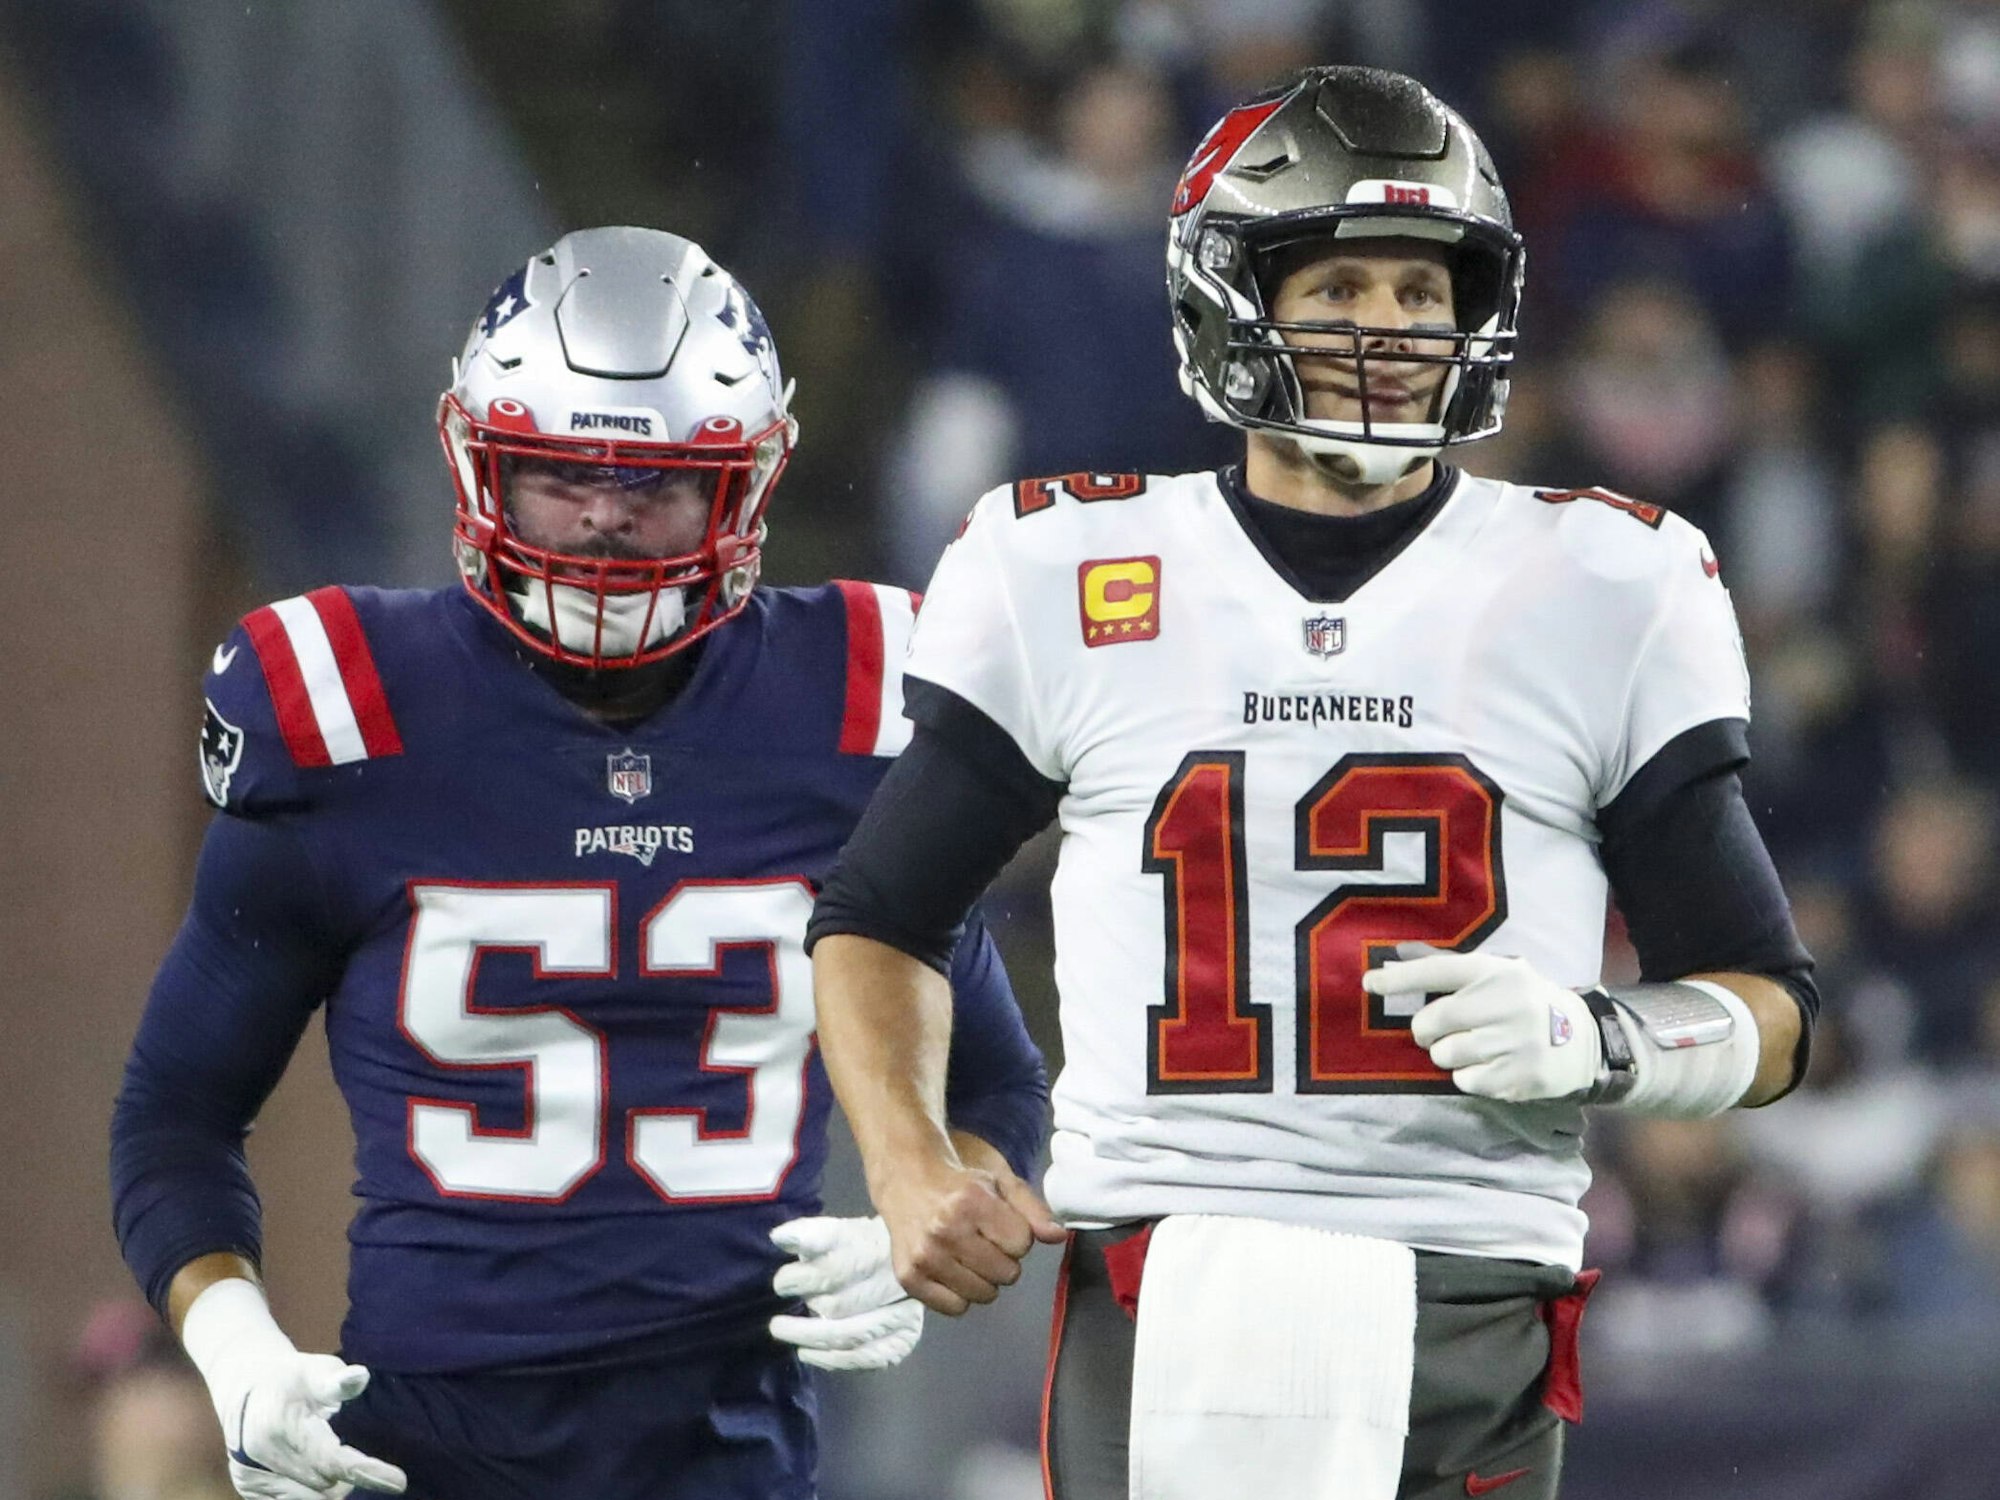 In voller Football-Montur stehen Kyle Van Noy von den Patriots und Tom Brady von den Buccaneers nebeneinander